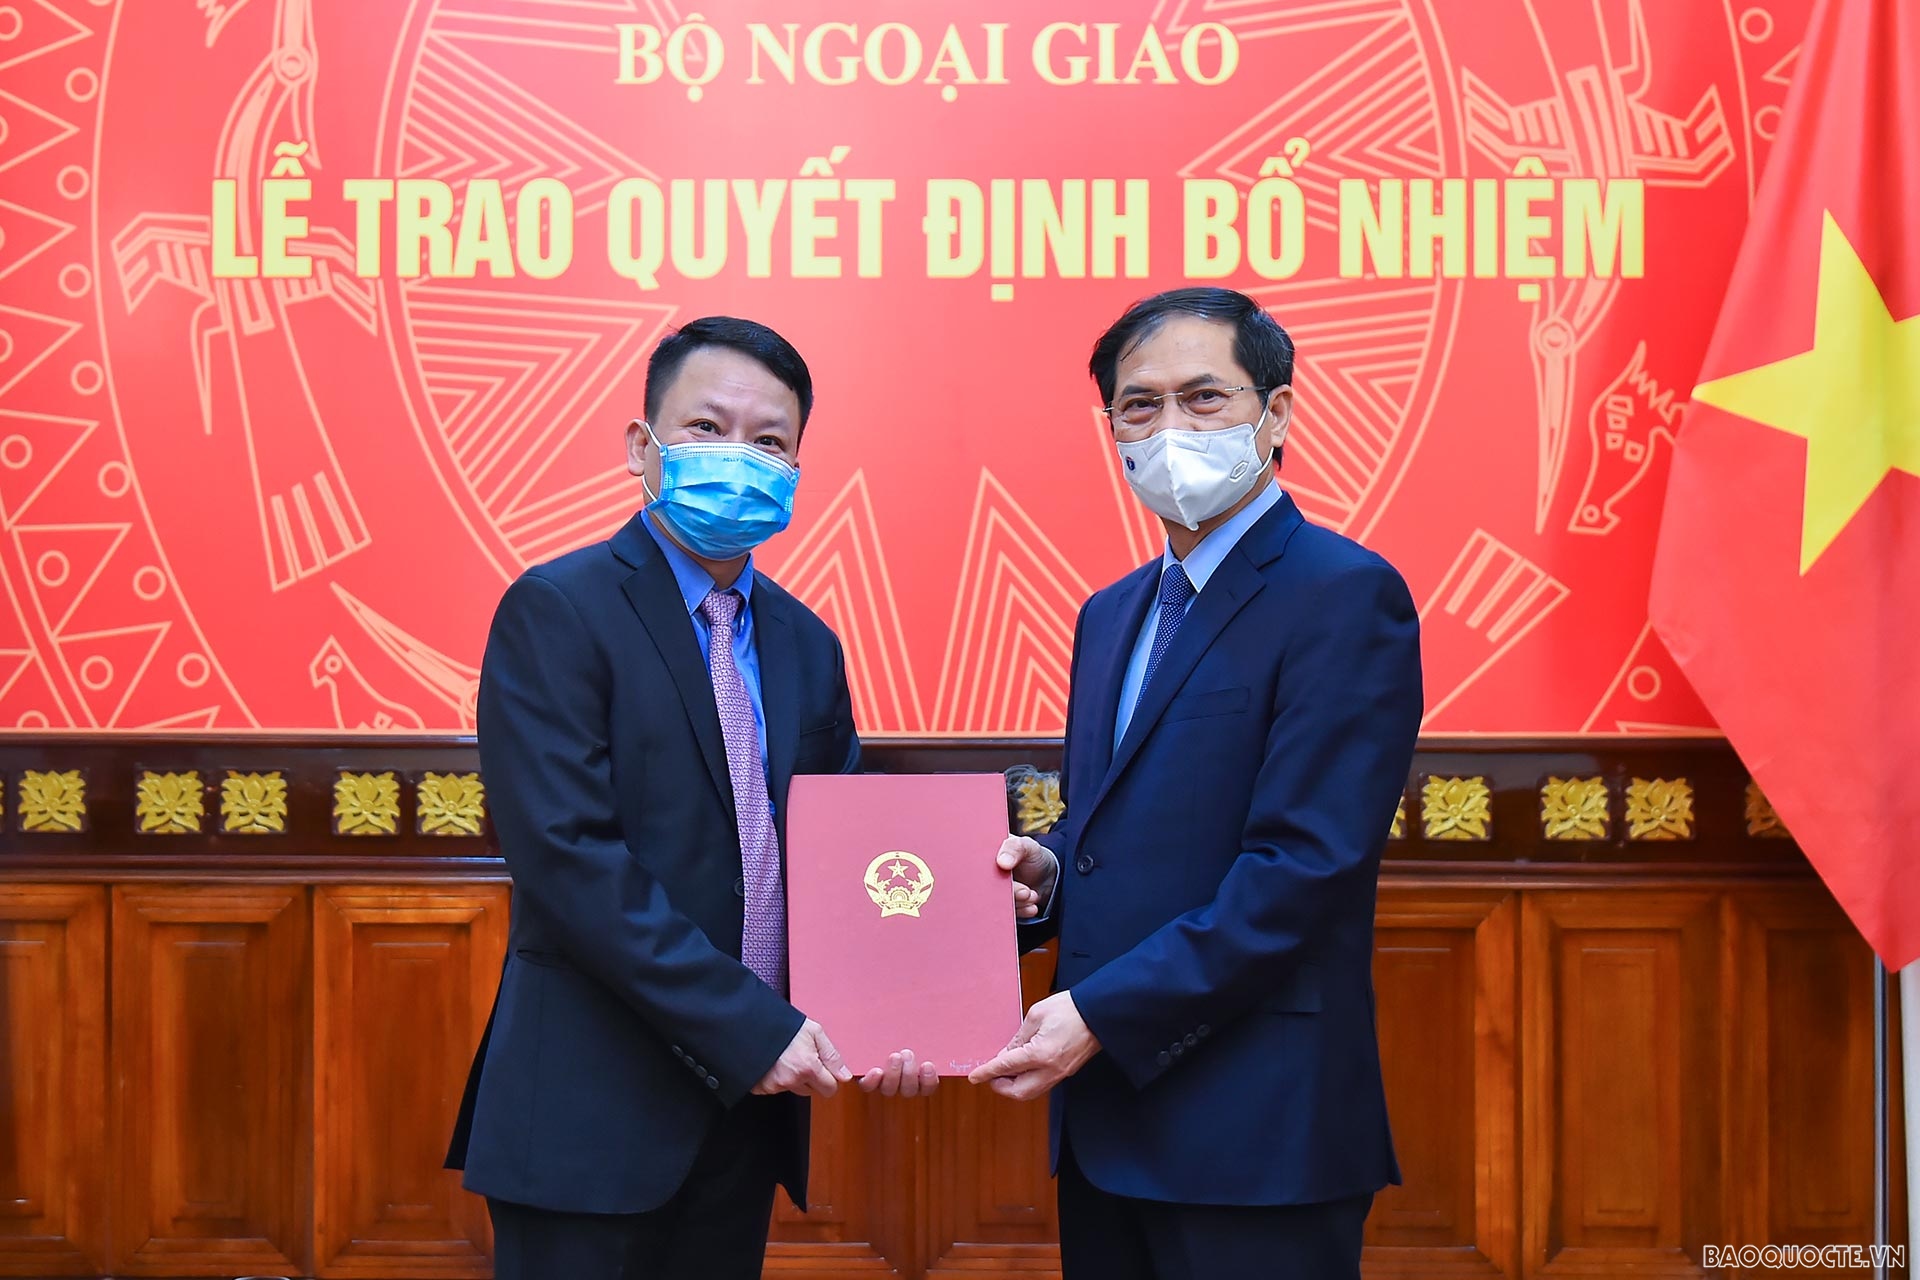 Tại buổi lễ, Ủy viên Trung ương Đảng, Bộ trưởng Ngoại giao Bùi Thanh Sơn trao quyết định bổ nhiệm ông Nguyễn Thanh Sơn, Quyền Giám đốc Nhà khách Chính phủ, giữ chức Giám đốc Nhà khách Chính phủ.